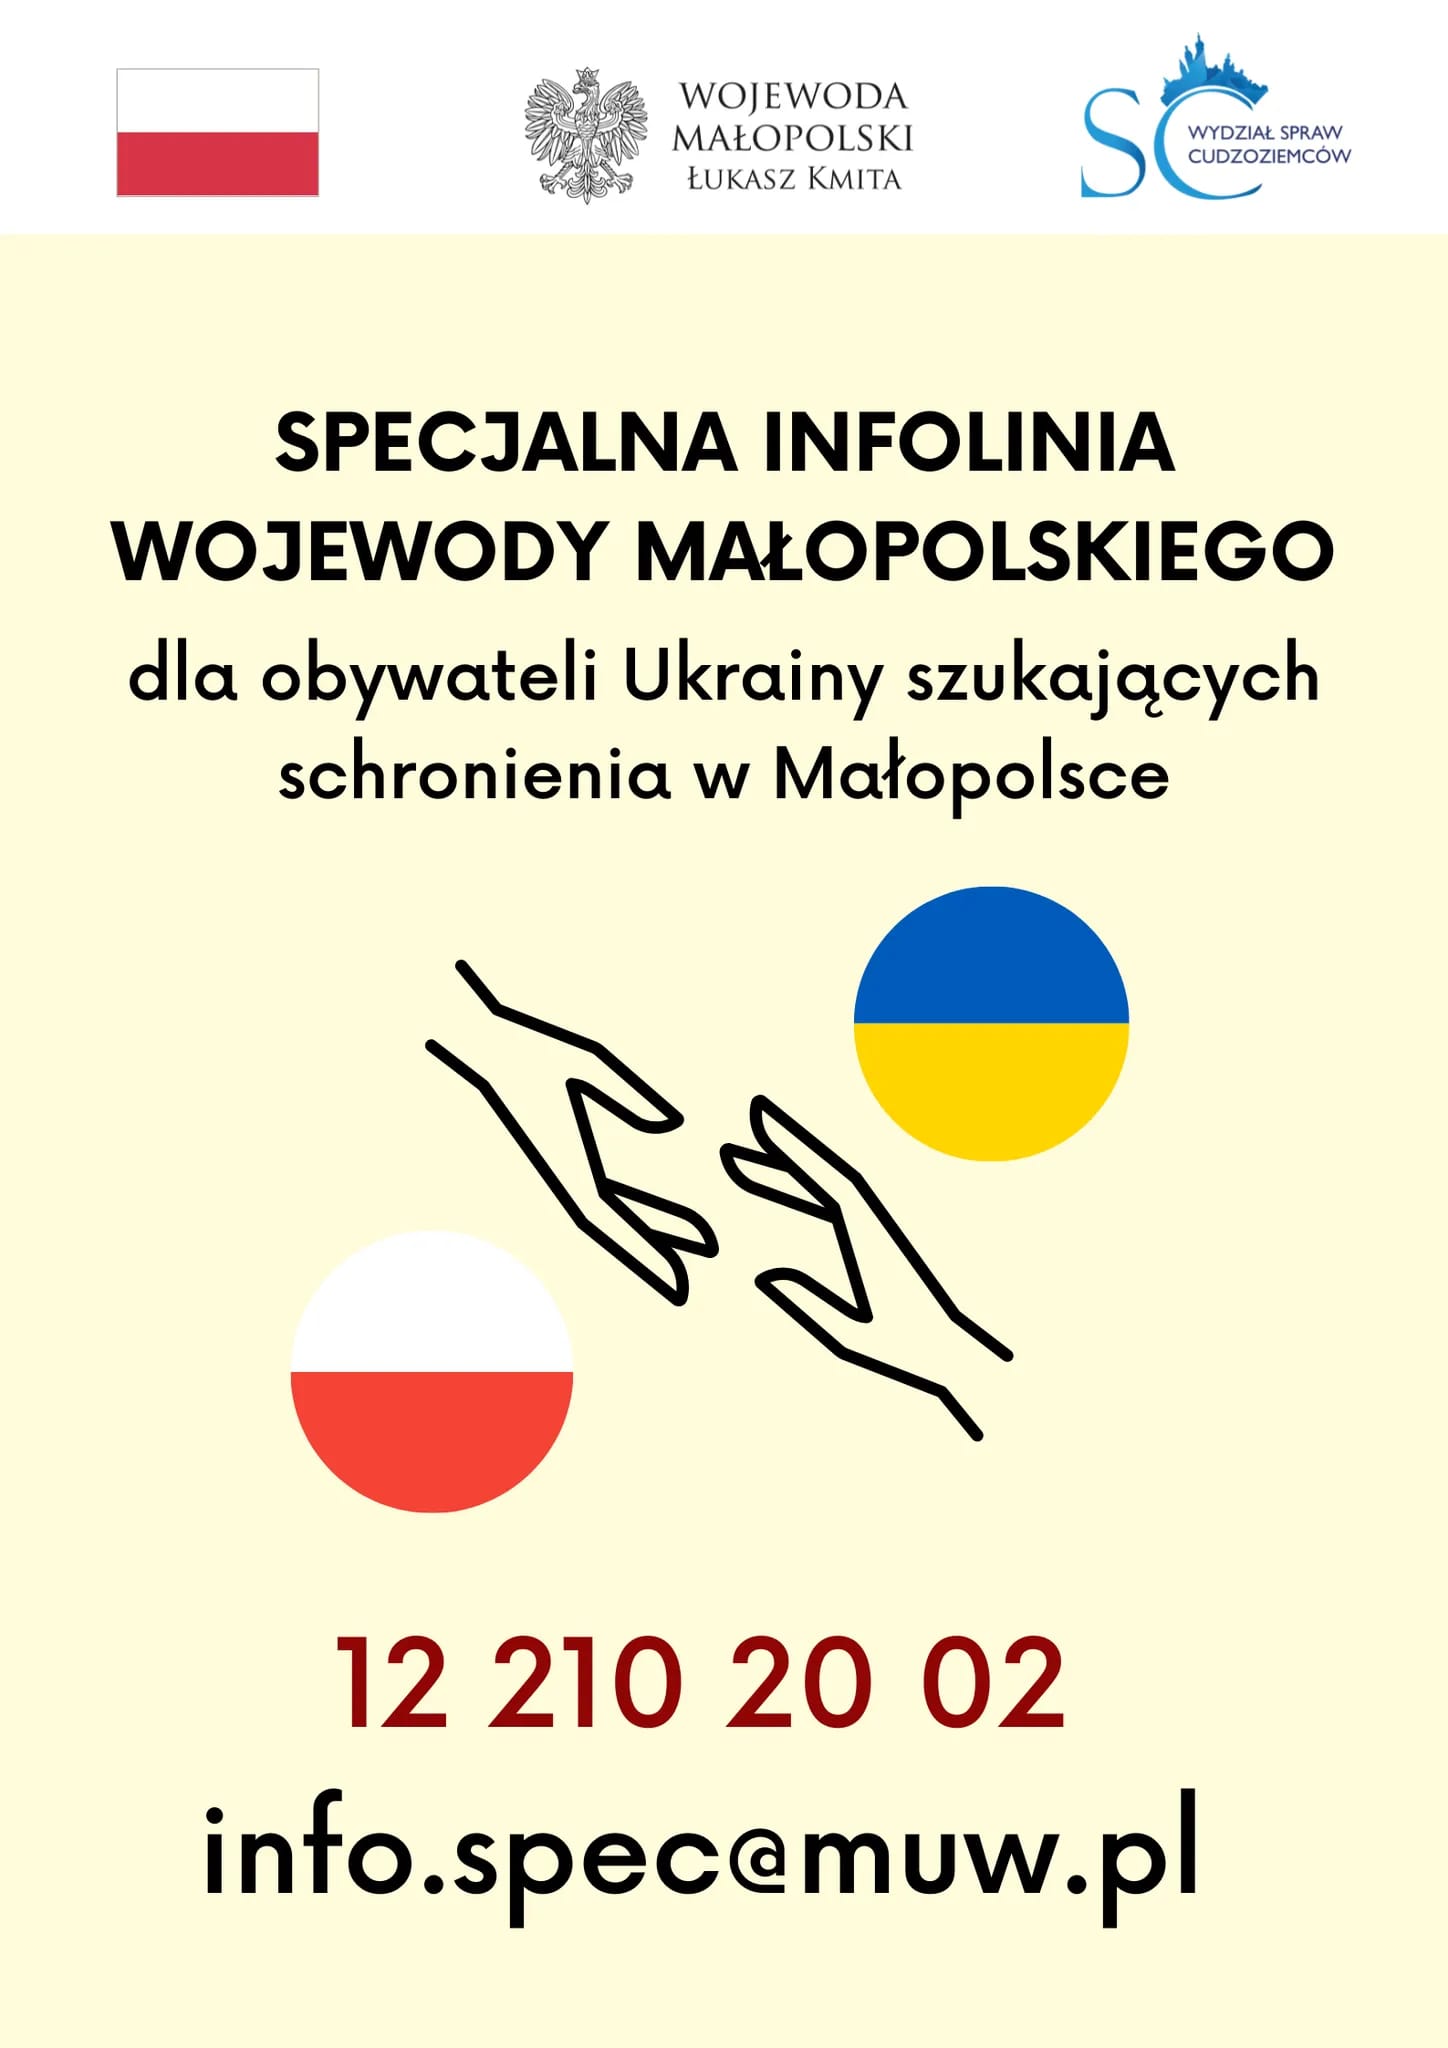 Plakat specjalna infolinia w języku polskim